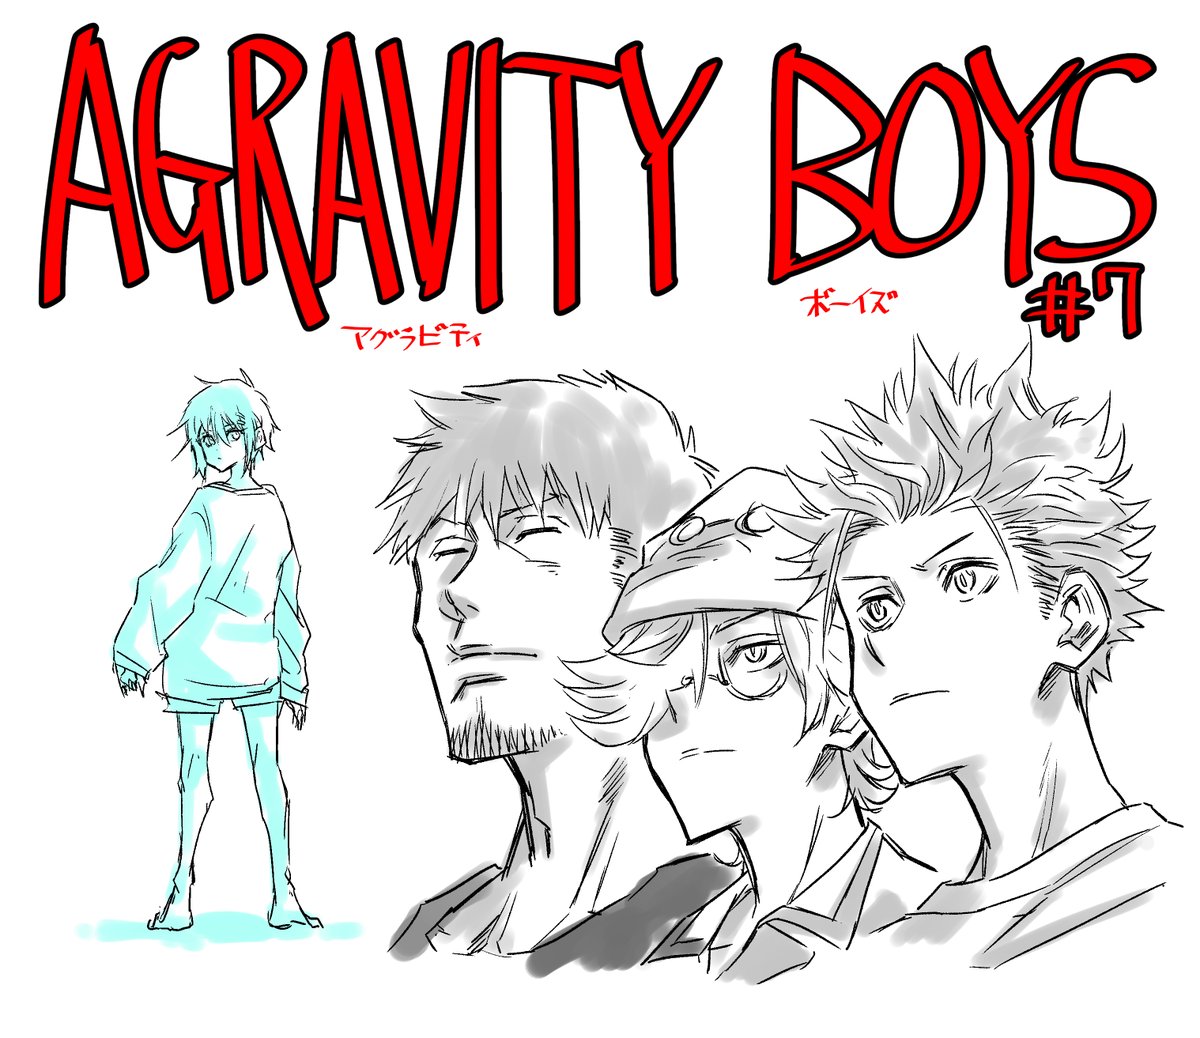 中村充志 今週発売の週刊少年ジャンプ10号に Agravity Boys 7話載ってます よろしくお願いします やっと4人が違う服着てくれて作者的にありがたかったです